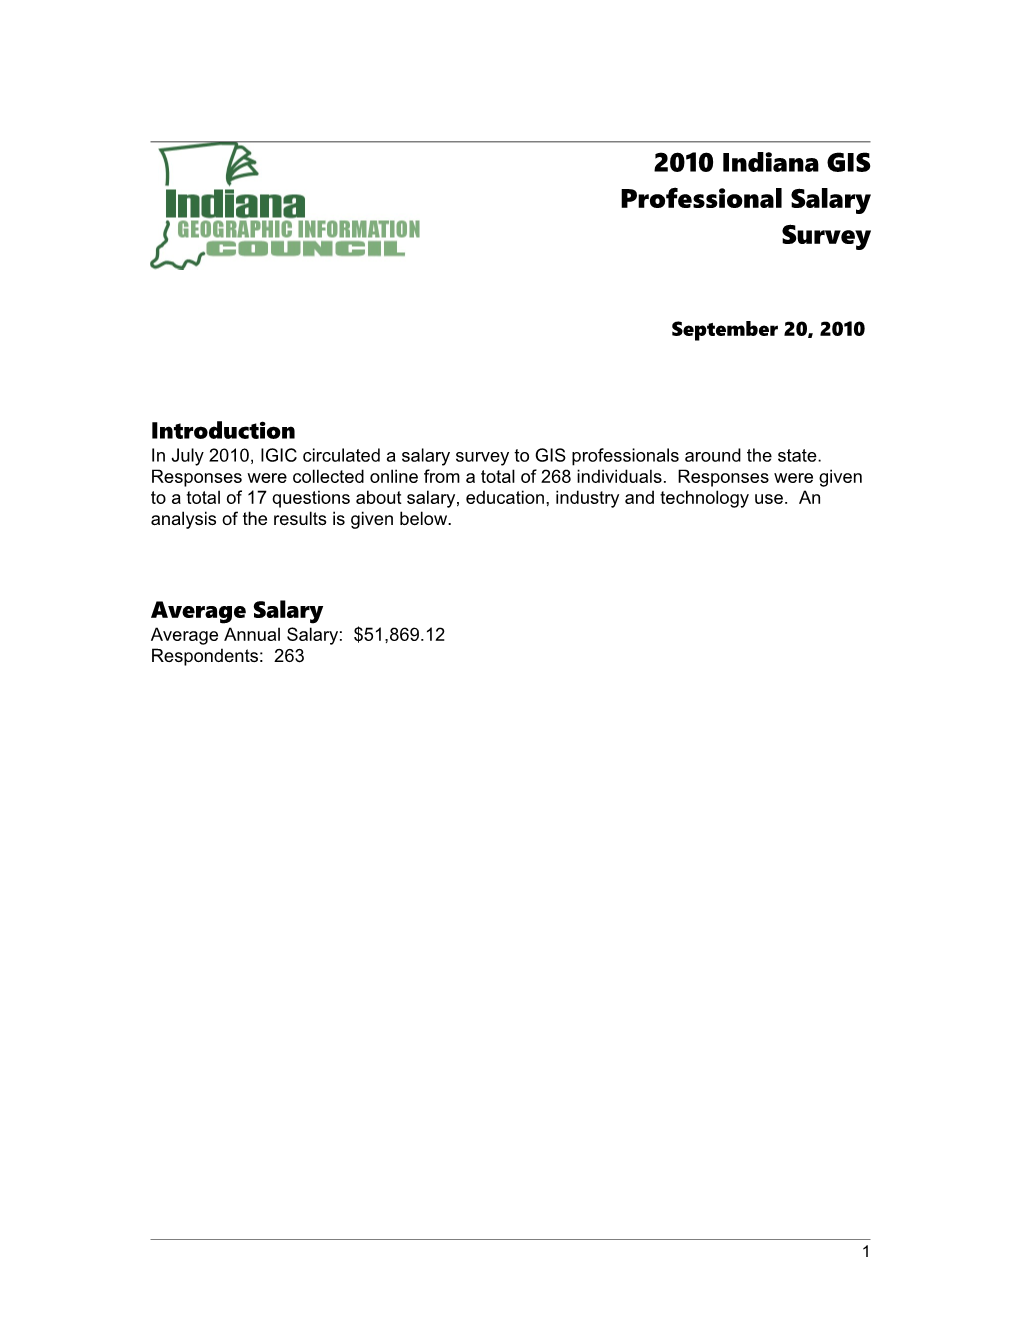 2010 Indiana GIS Professional Salary Survey